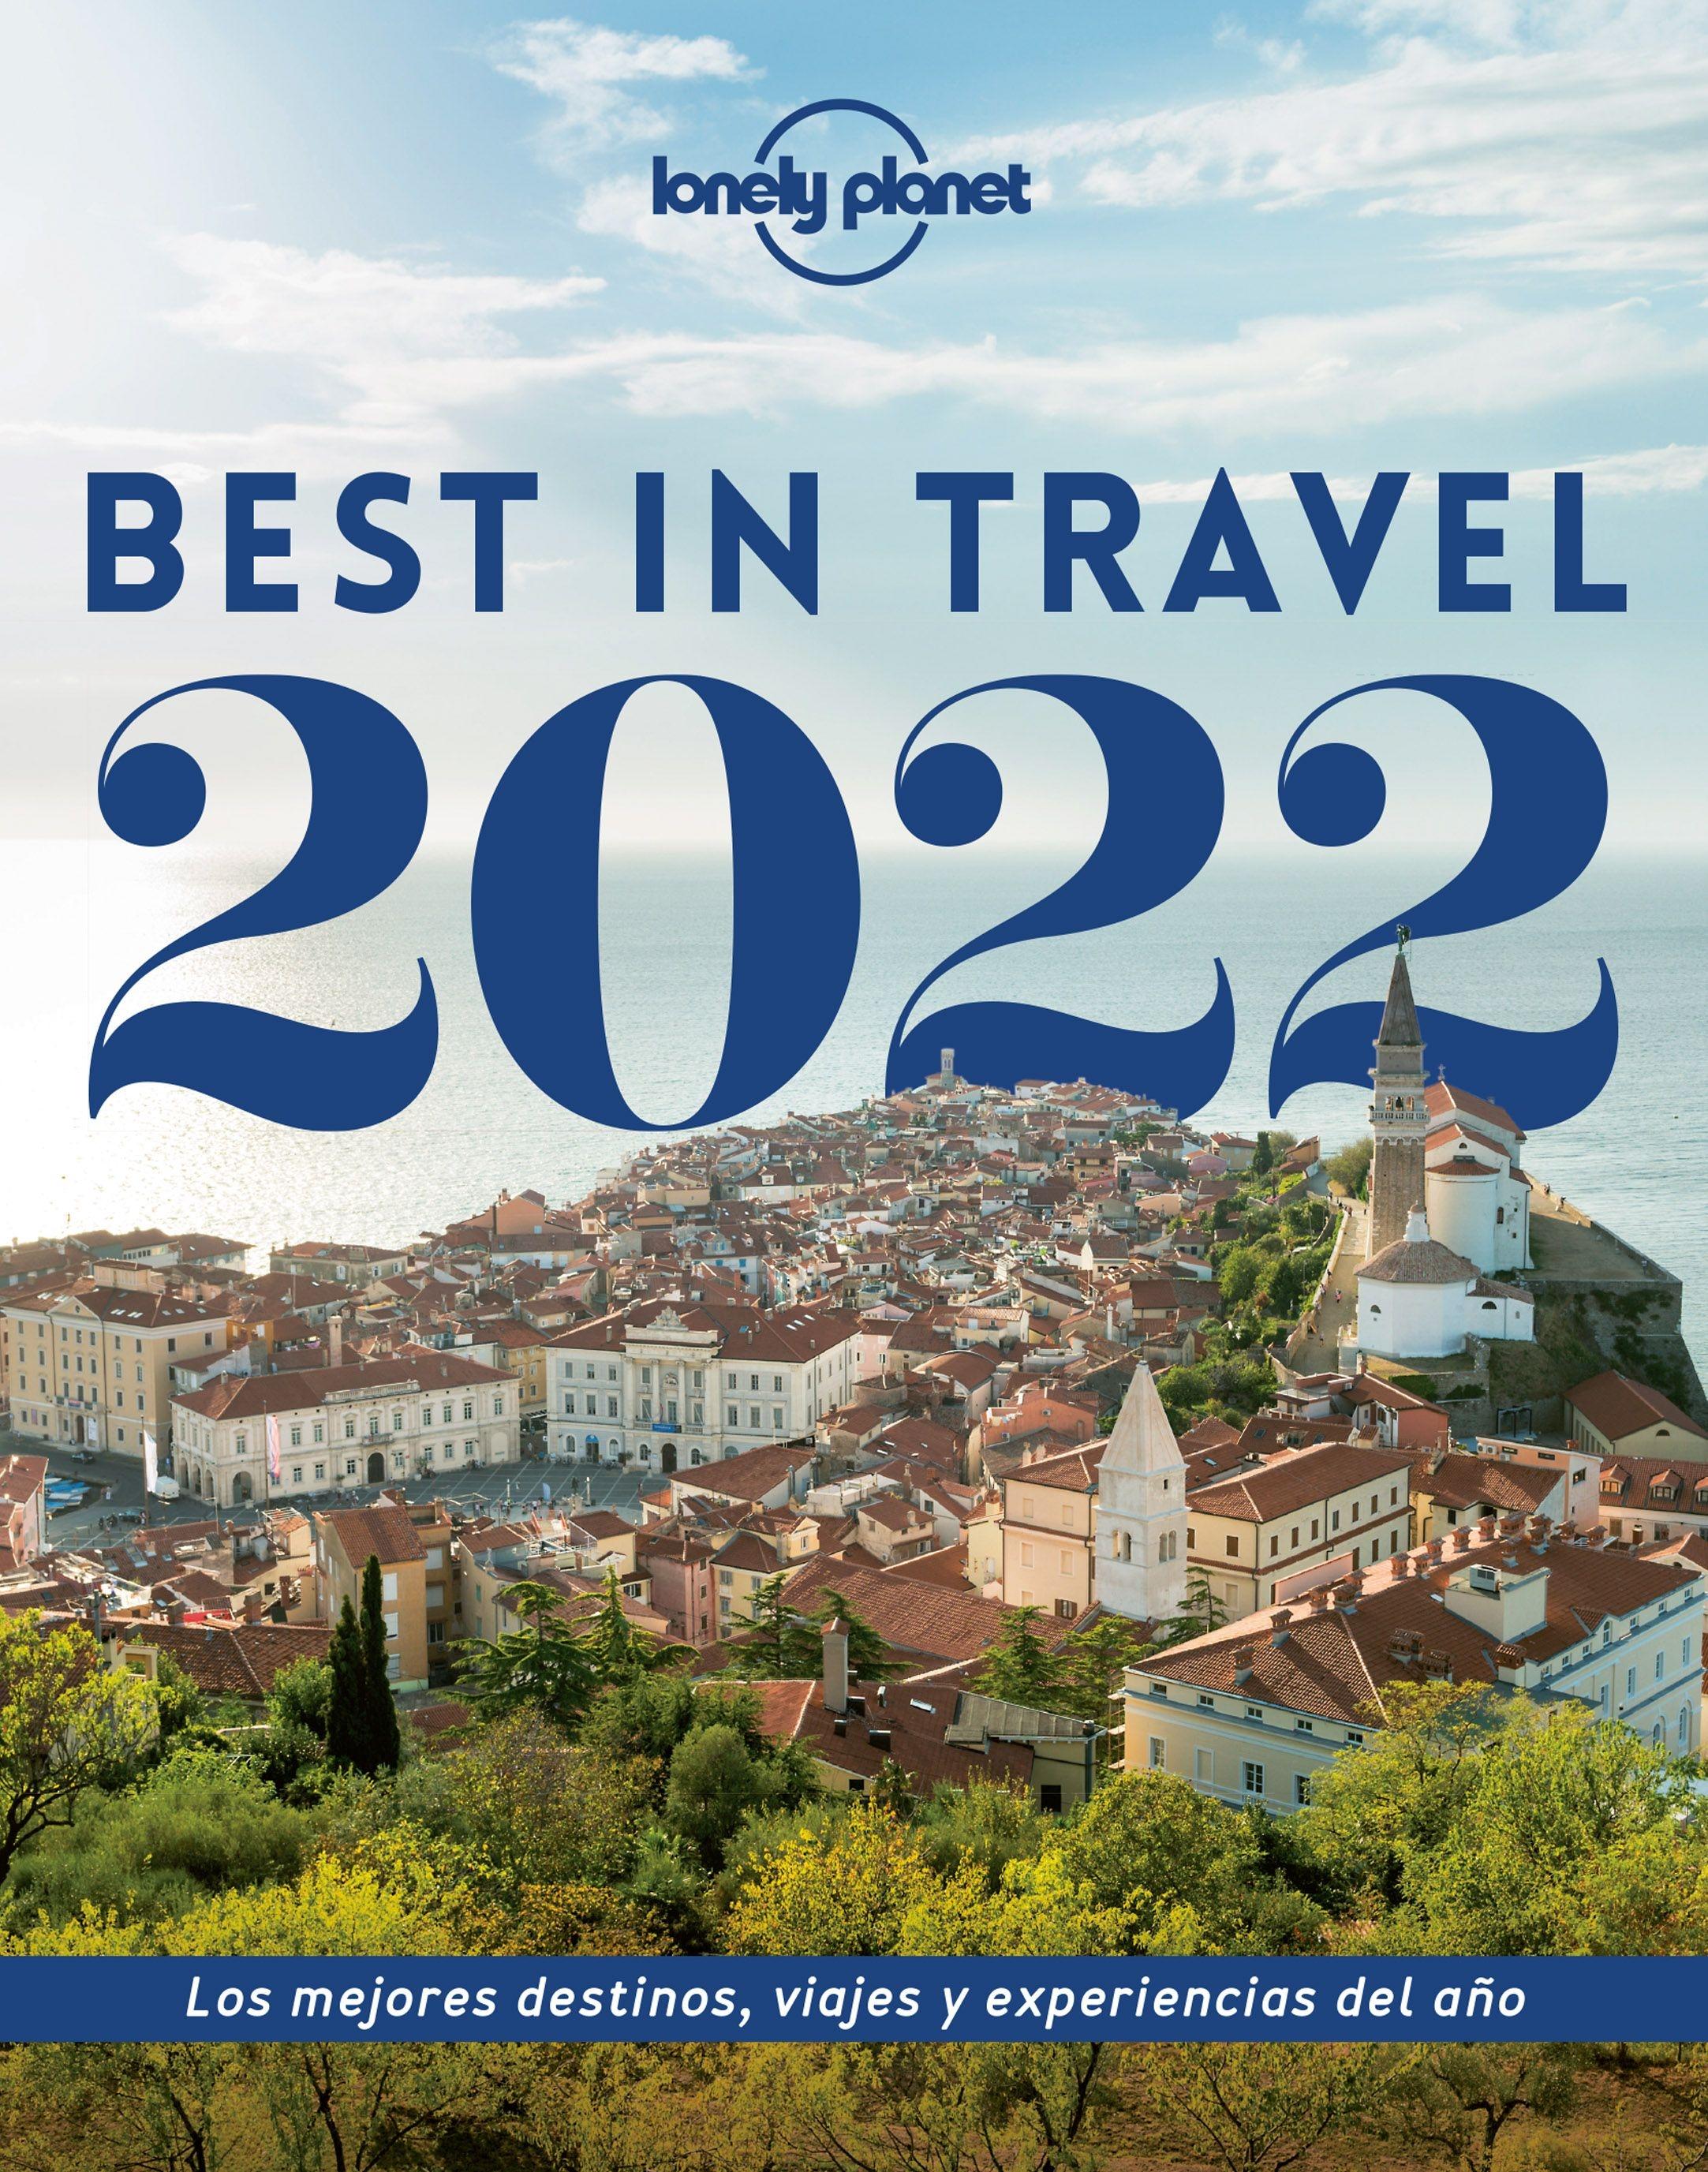 Best in Travel 2022 "Los mejores destinos, viajes y experiencias del año"